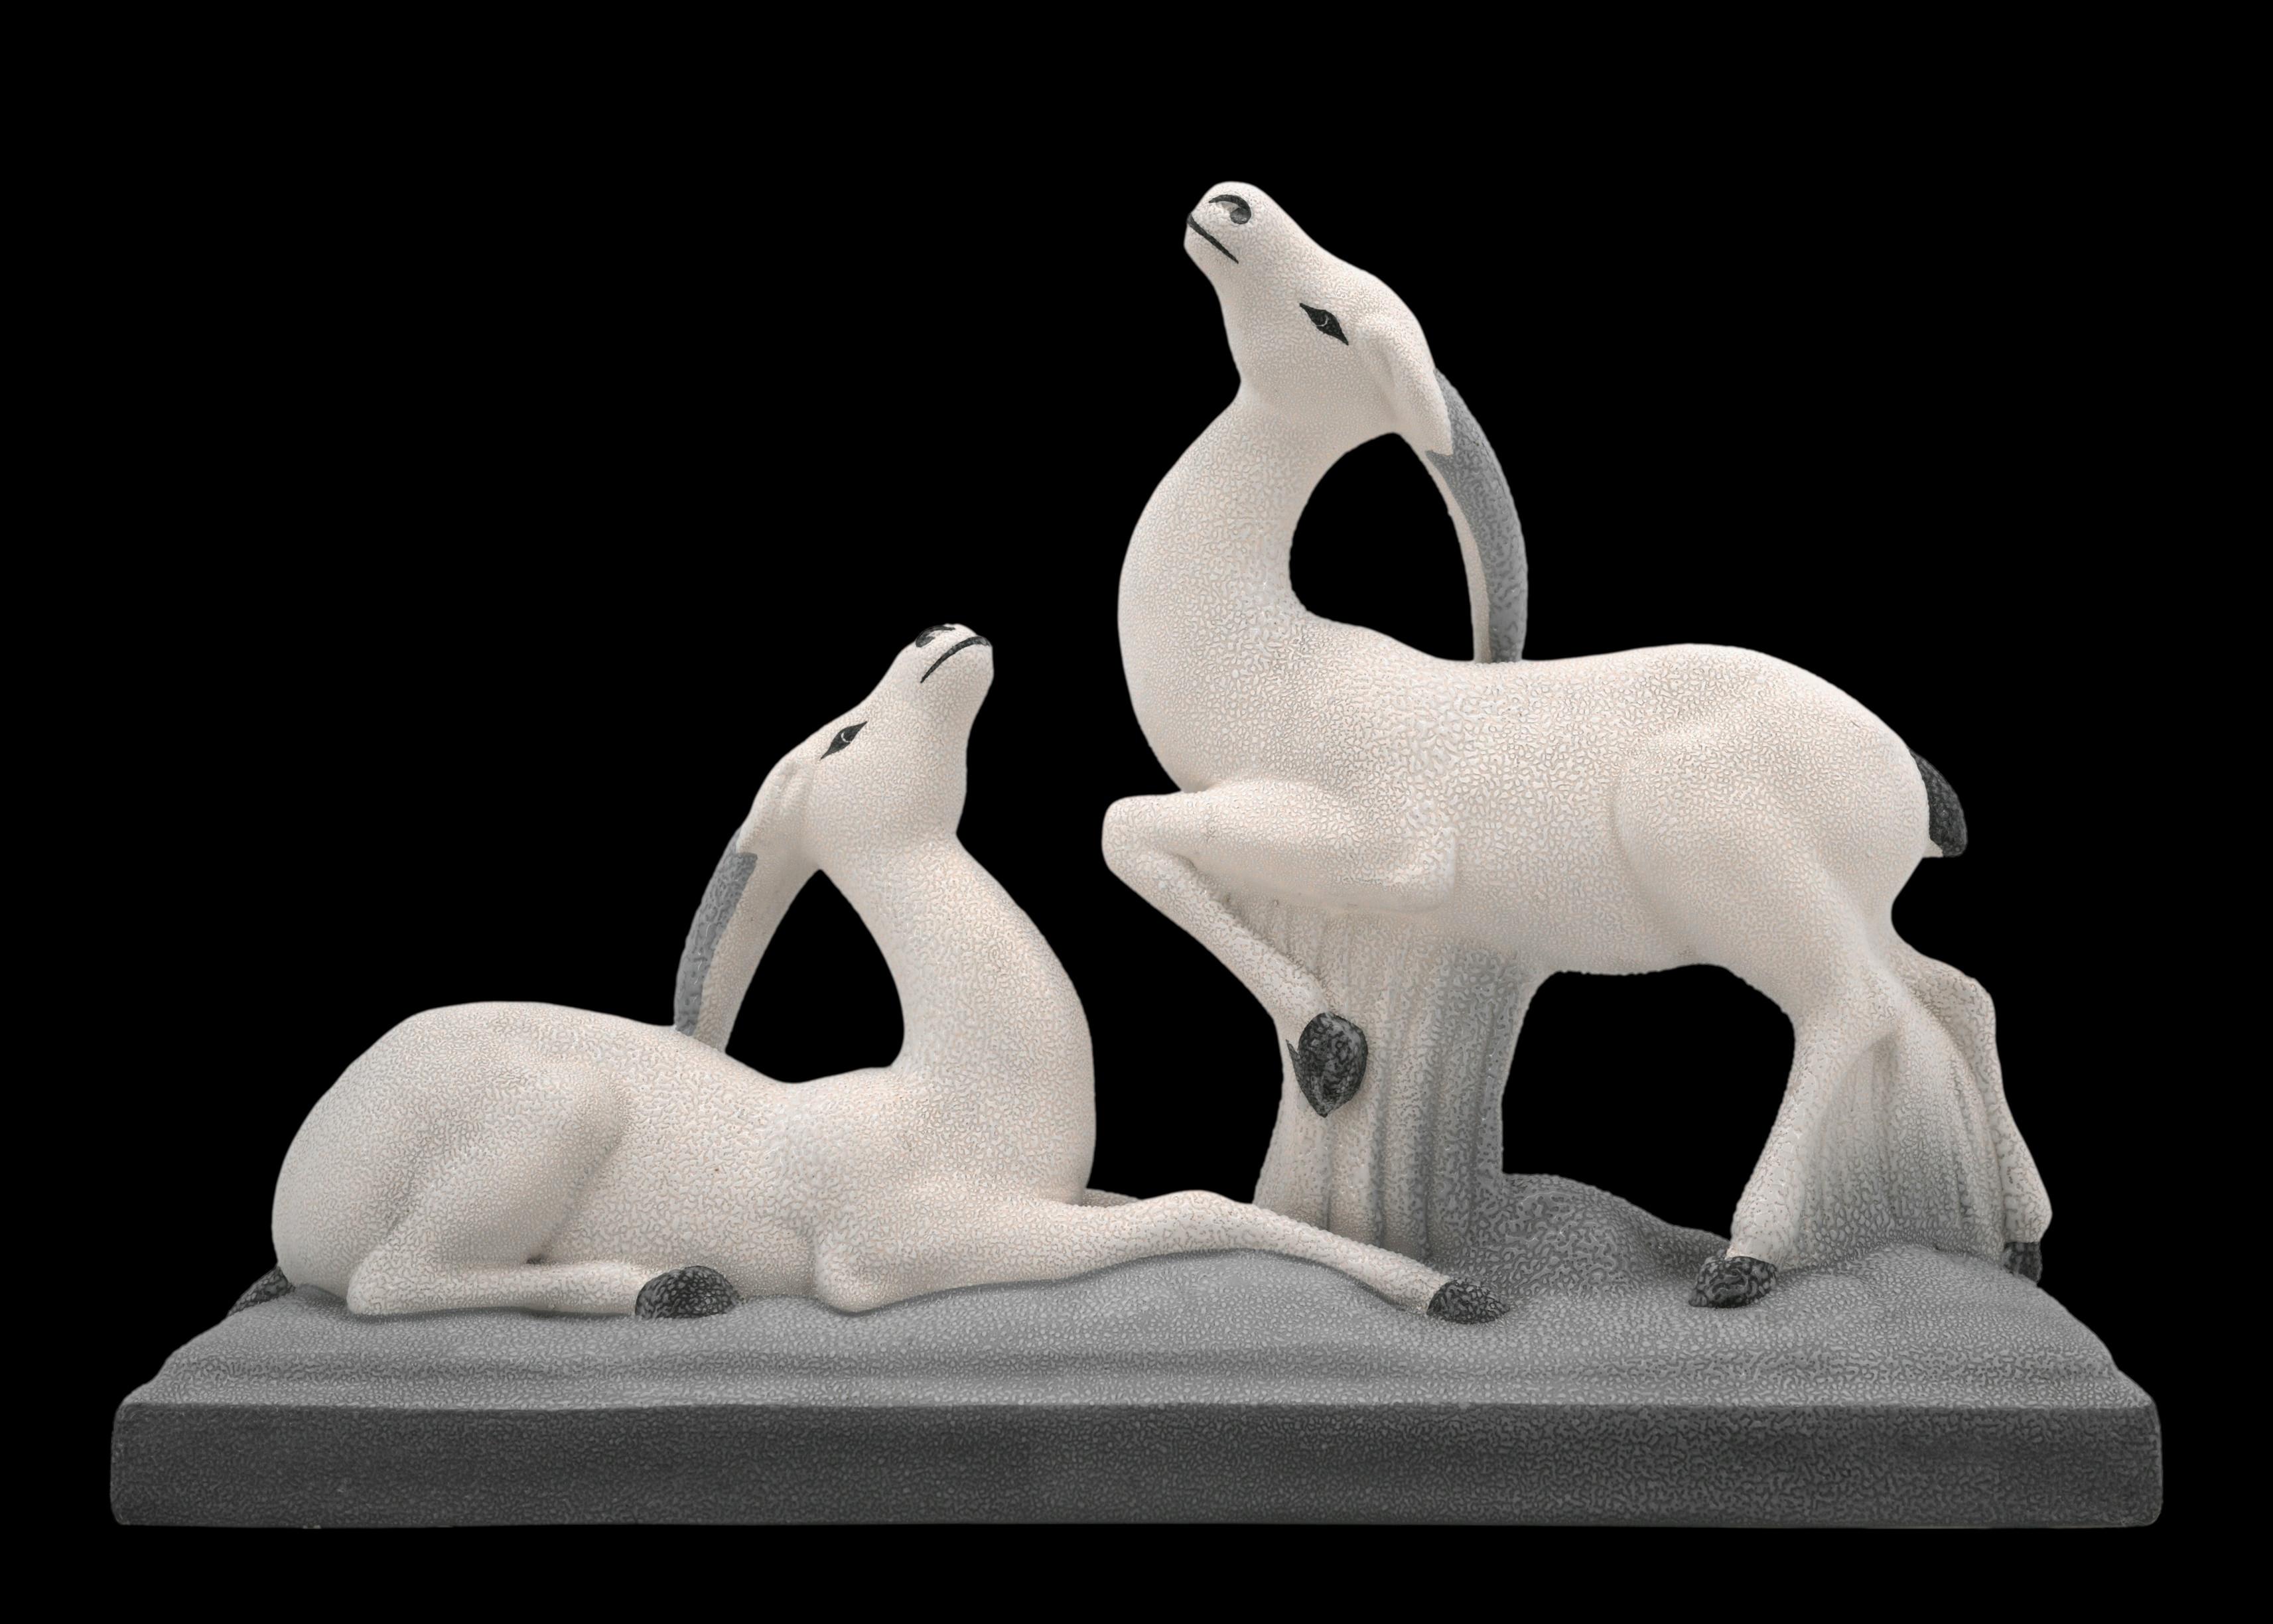 Französische Antilopenpaar-Skulptur im Art déco-Stil von Charles LEMANCEAU in Sainte-Radegonde, Frankreich, 1930. Abgebildet im Katalog von Sainte-Radegonde, Seite 8 (siehe Foto). Maße: Breite: 19.1